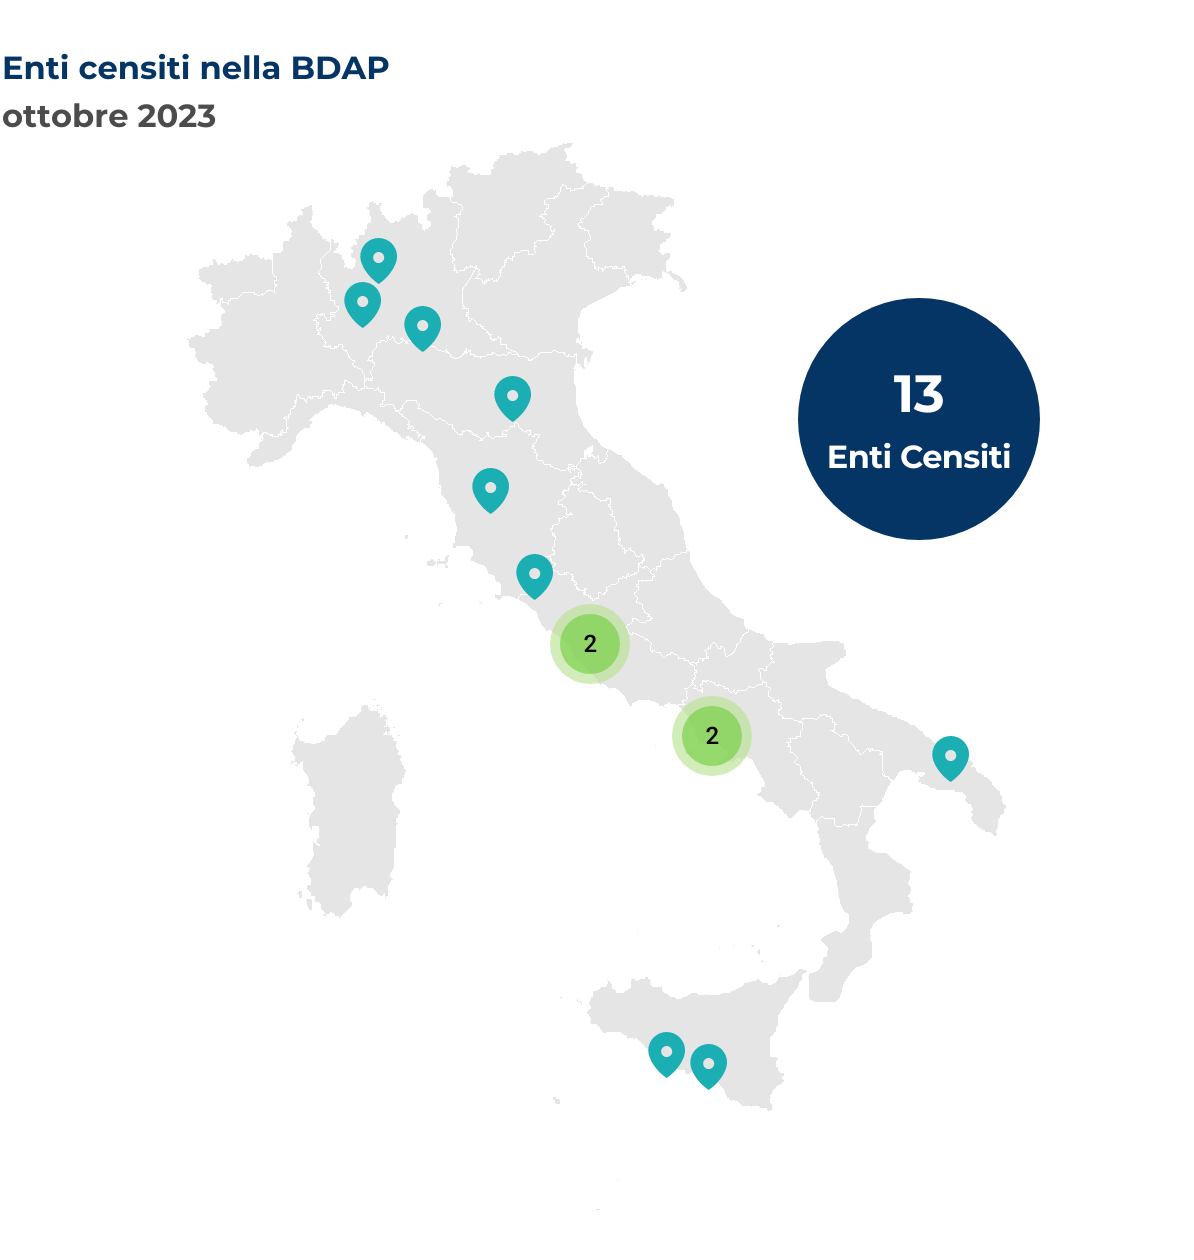 Mappa dell'Italia che mostra la localizzazione degli enti censiti nella BDAP. Nel mese di ottobre 2023 sono stati censiti 13 nuovi enti così distribuiti per regione: Campania 2 enti, Emilia-Romagna 1 ente, Lazio 2 enti, Lombardia 3 enti, Puglia 1 ente, Sicilia 2 enti, Toscana 2 enti.